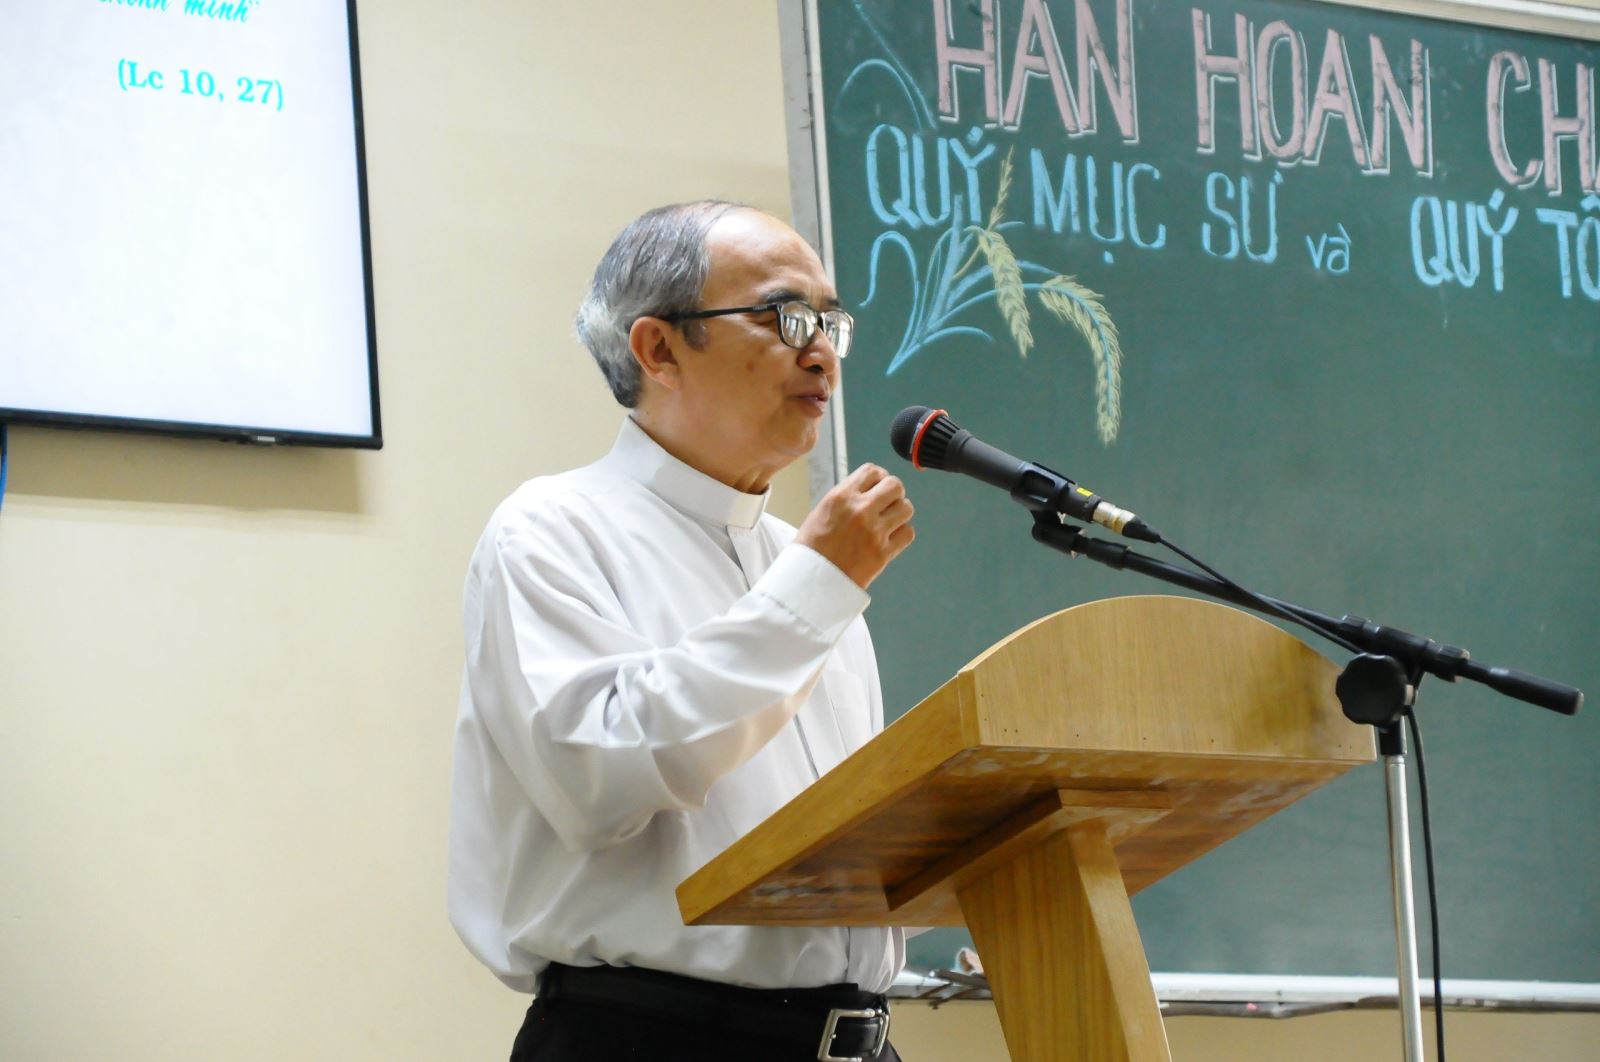 Fr Peter Nguyen Van Hien